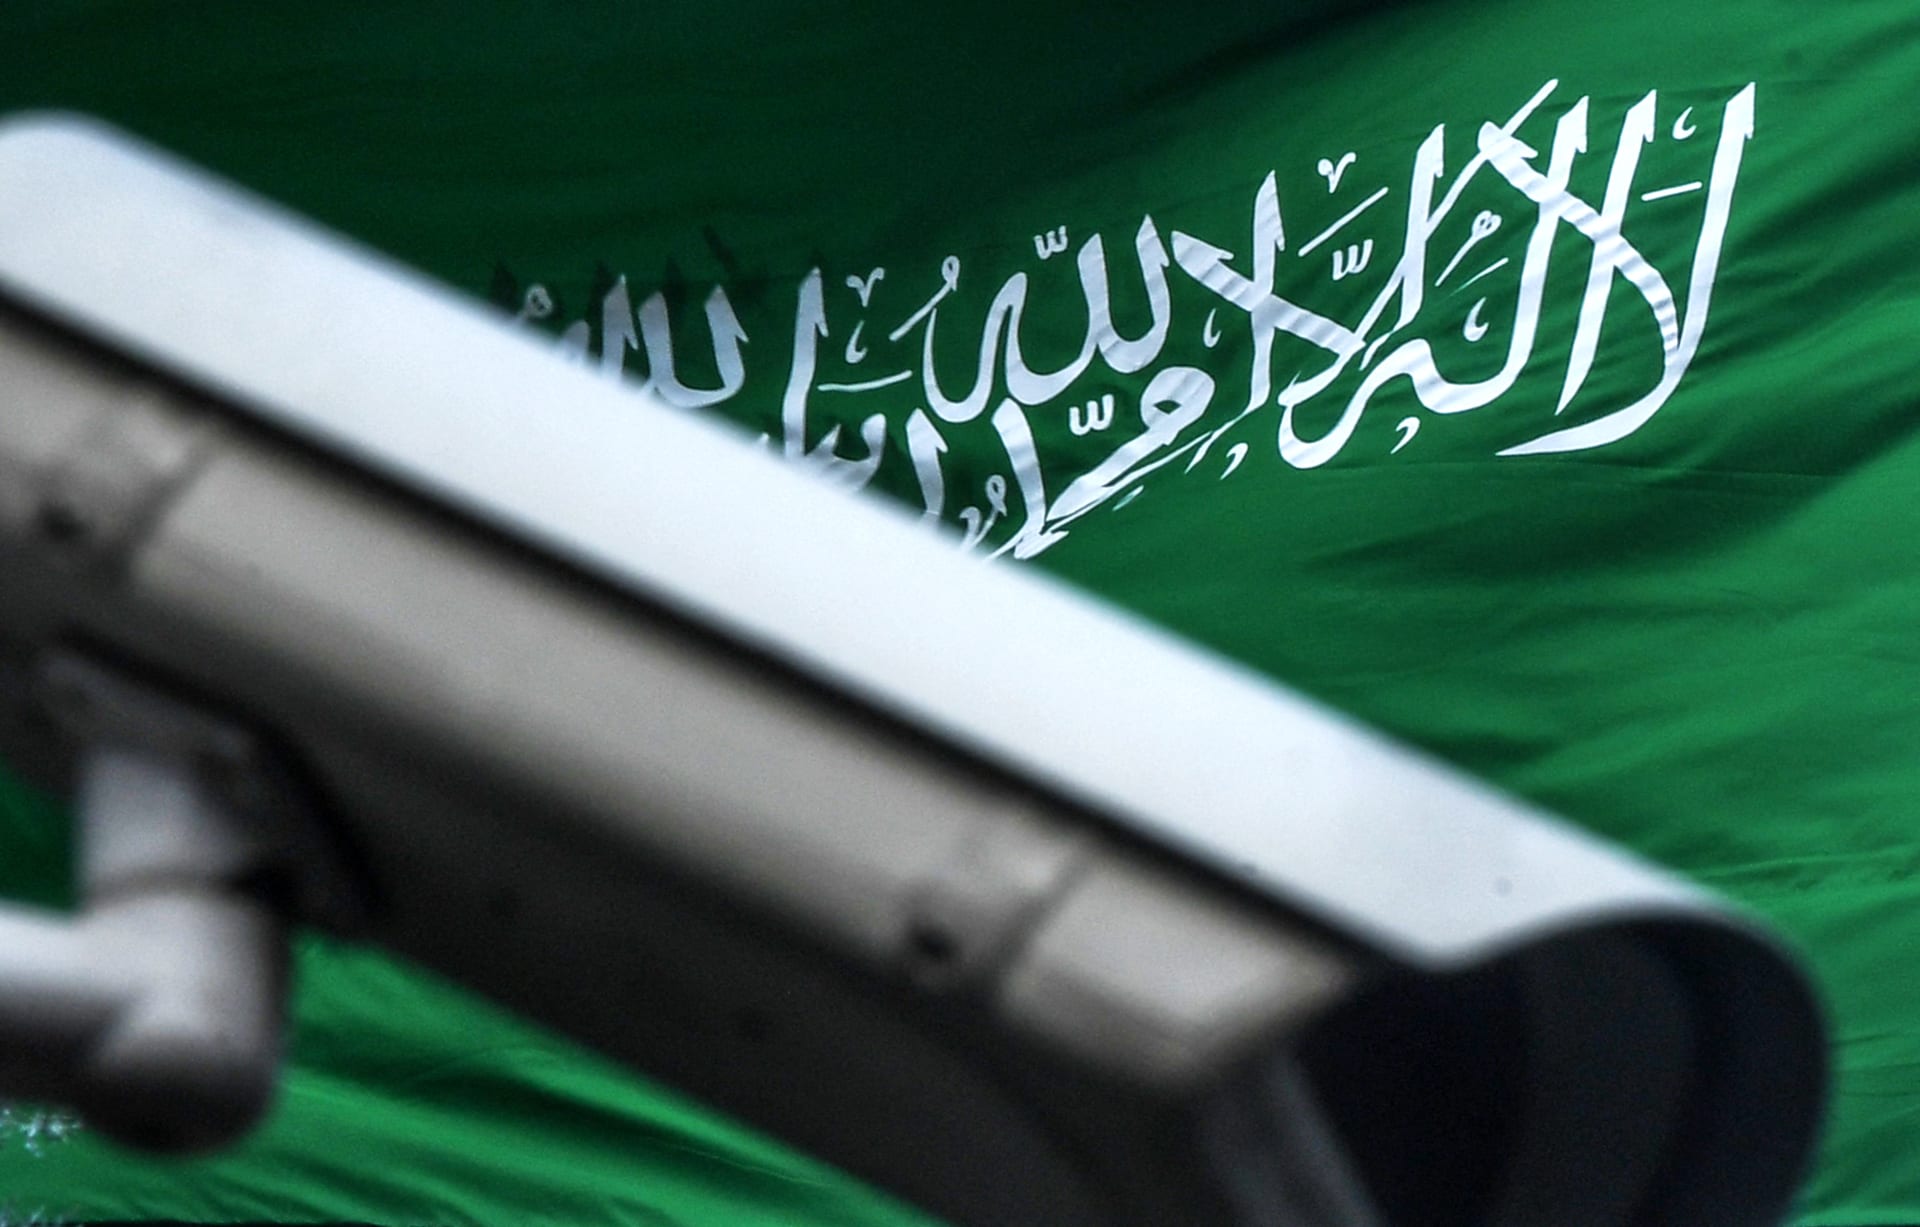 سفير أمريكا في السعودية يعلق على شجاعة حارس الأمن المقتول "بالهجوم المسلح" على القنصلية في جدة